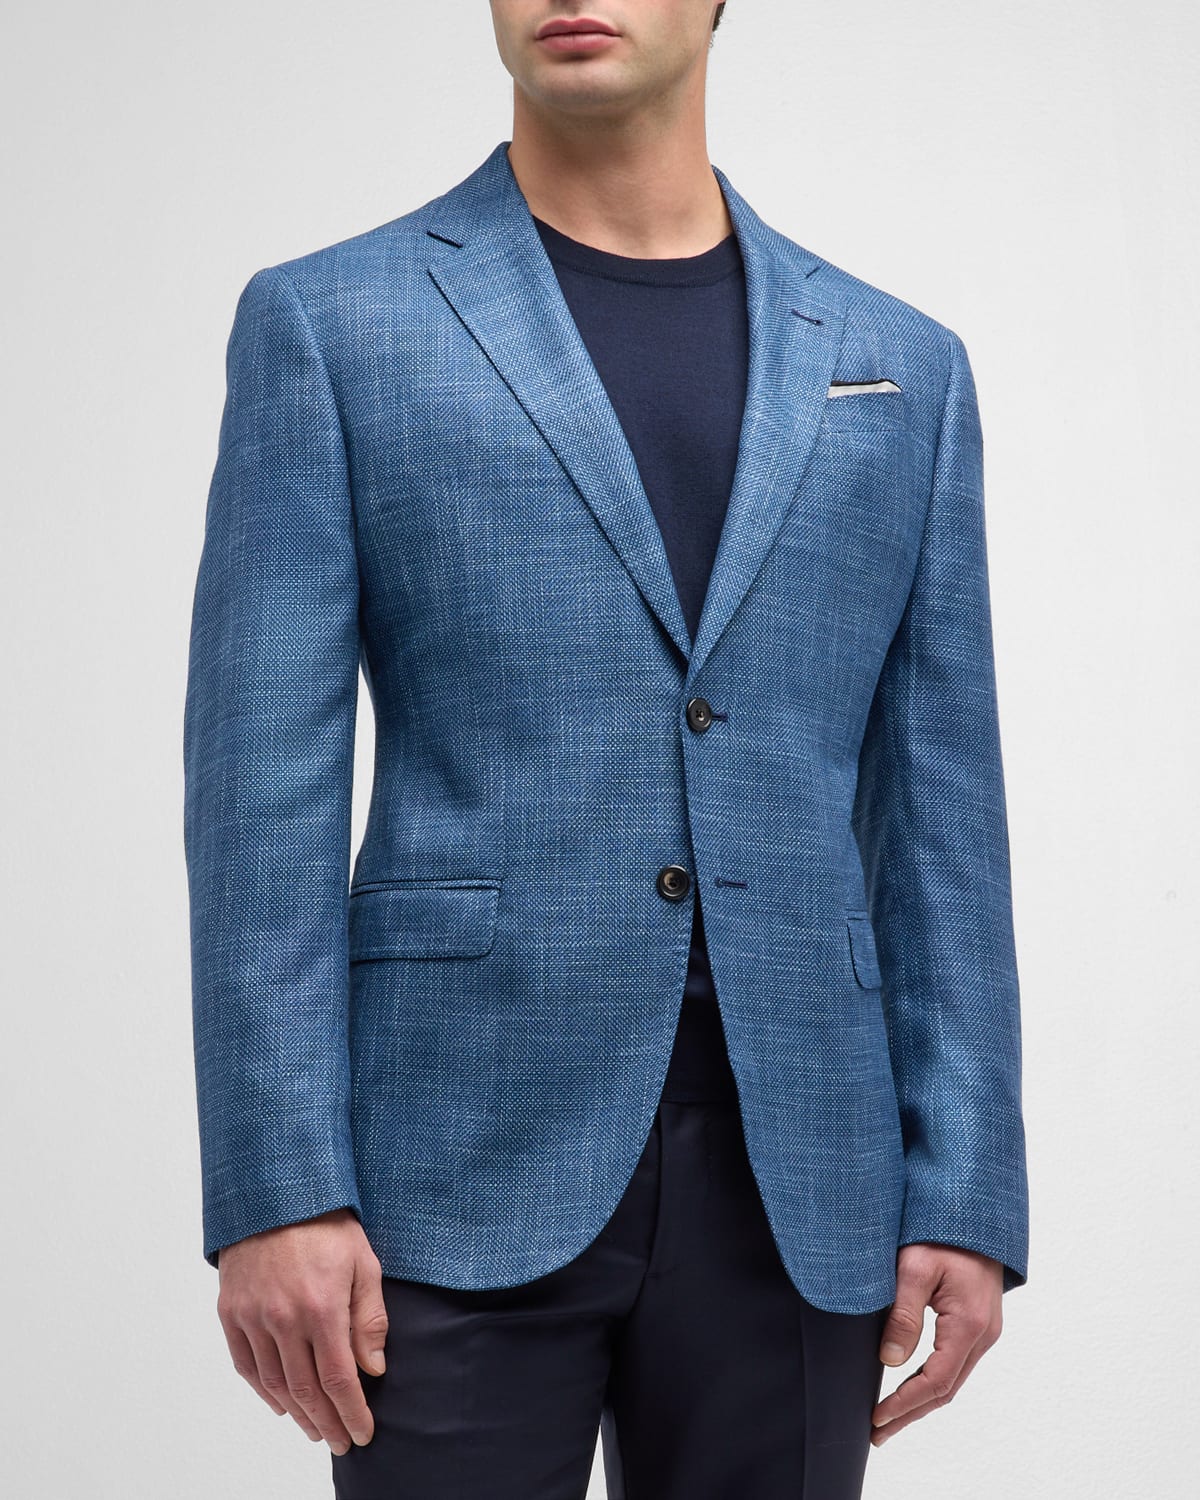 Emporio Armani Men's Textured Viscose Sport Coat In Solid Medium Blue